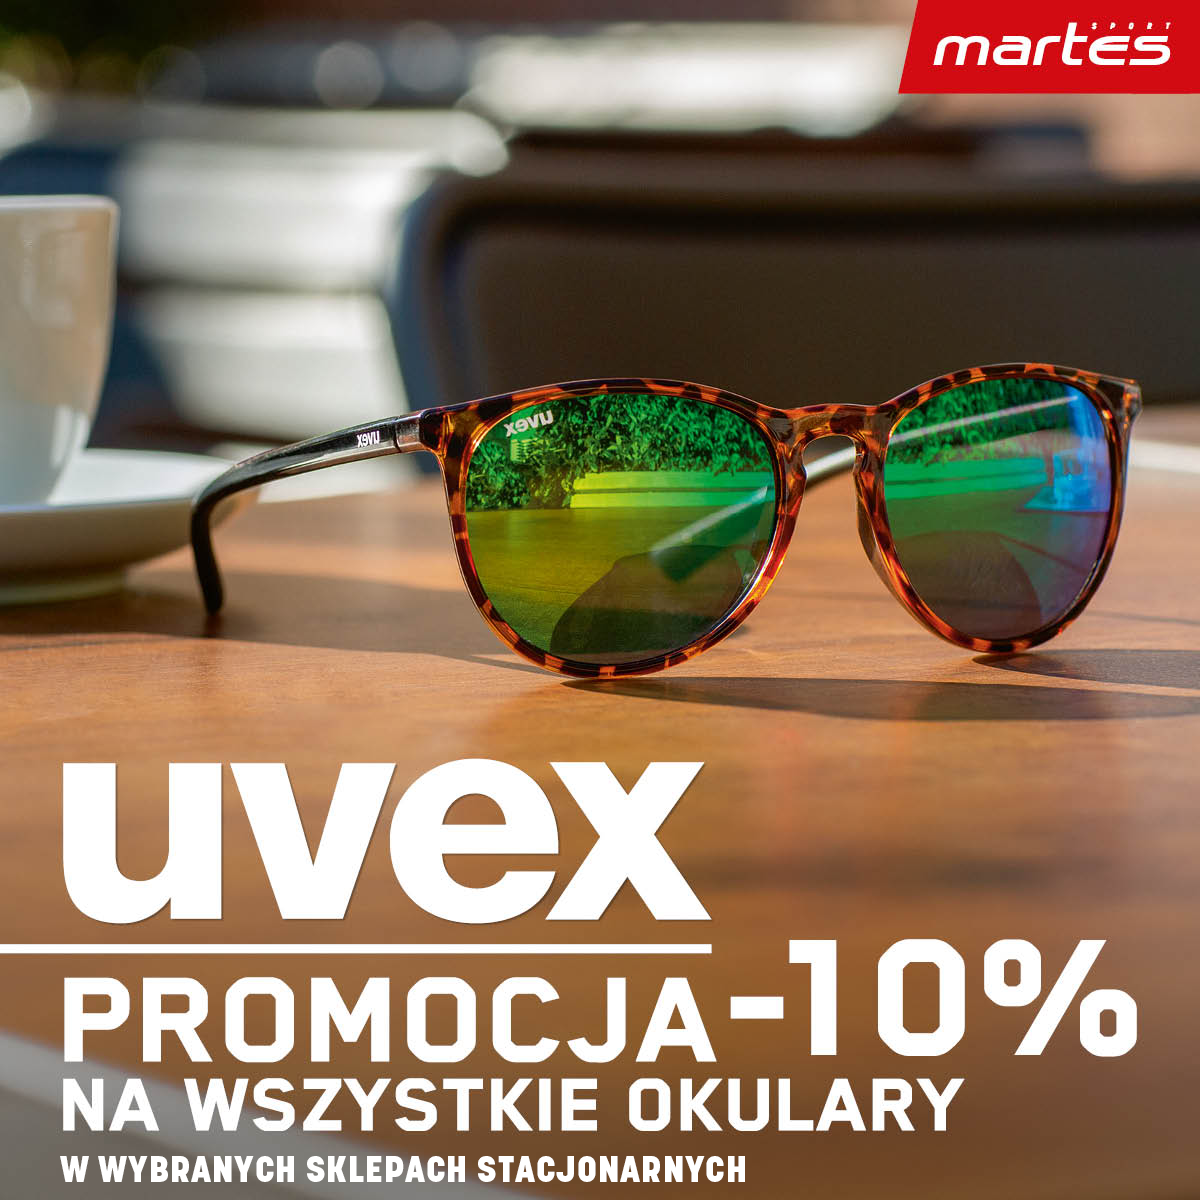 Okularki marki UVEX ! Promocja -10%